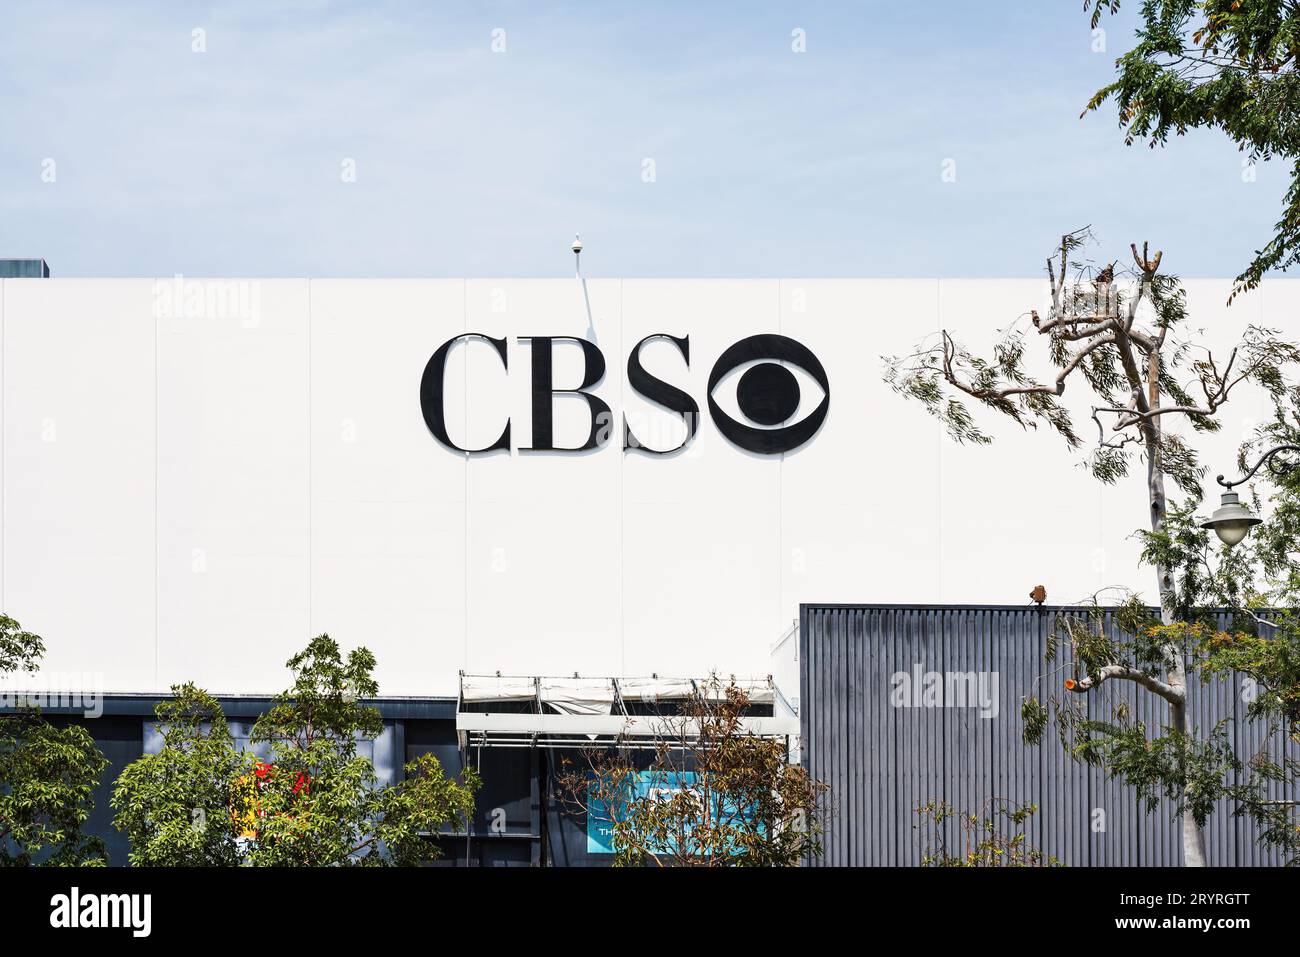 CBS réseau de télévision et de radio commerciale américain à Television City, situé dans le district de Fairfax de Los Angeles, Californie, États-Unis. Banque D'Images